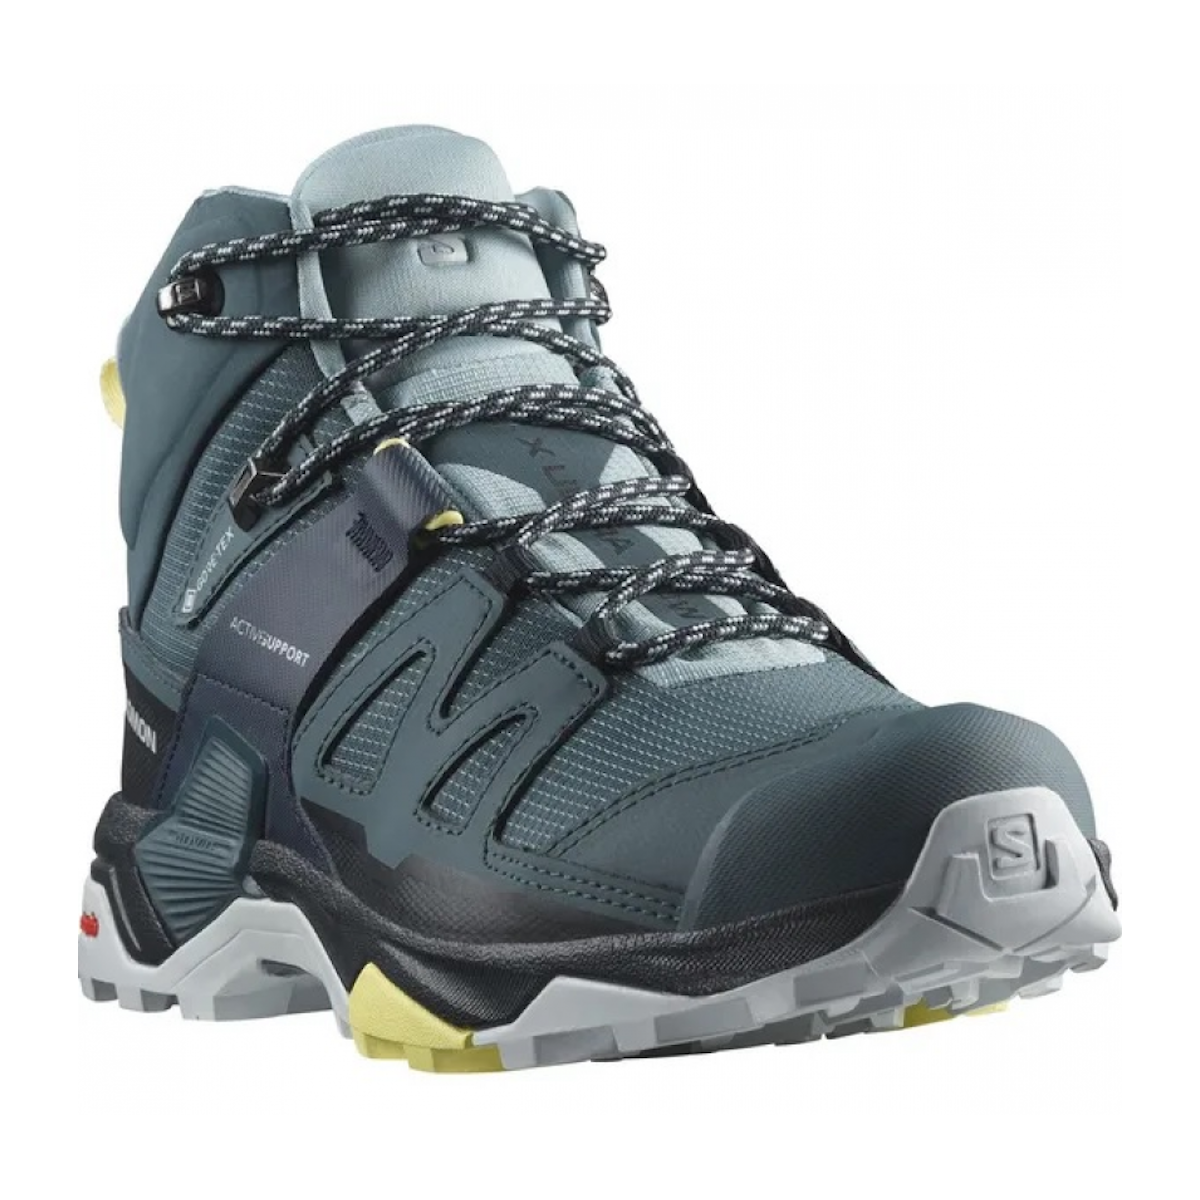 SALOMON X ULTRA 4 MID GTX W hiking footwear - blue/black/yellow